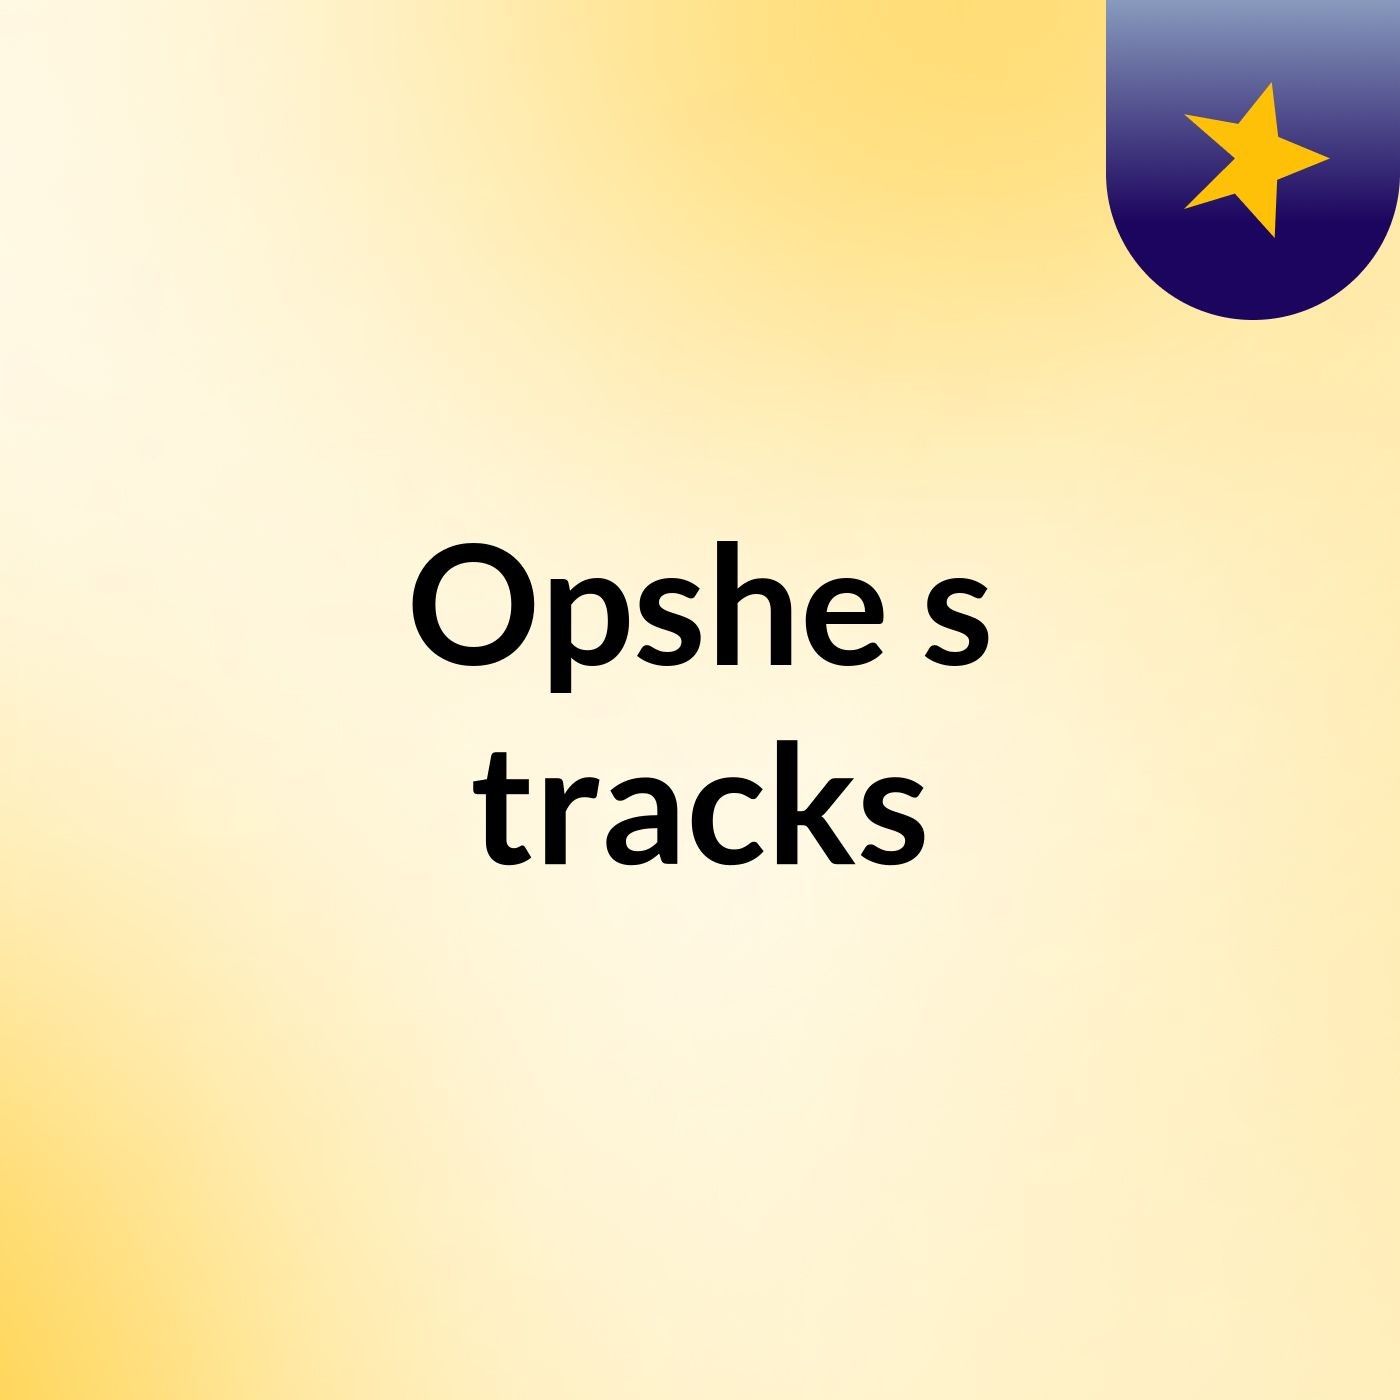 Episode 10 - Opshe's tracks